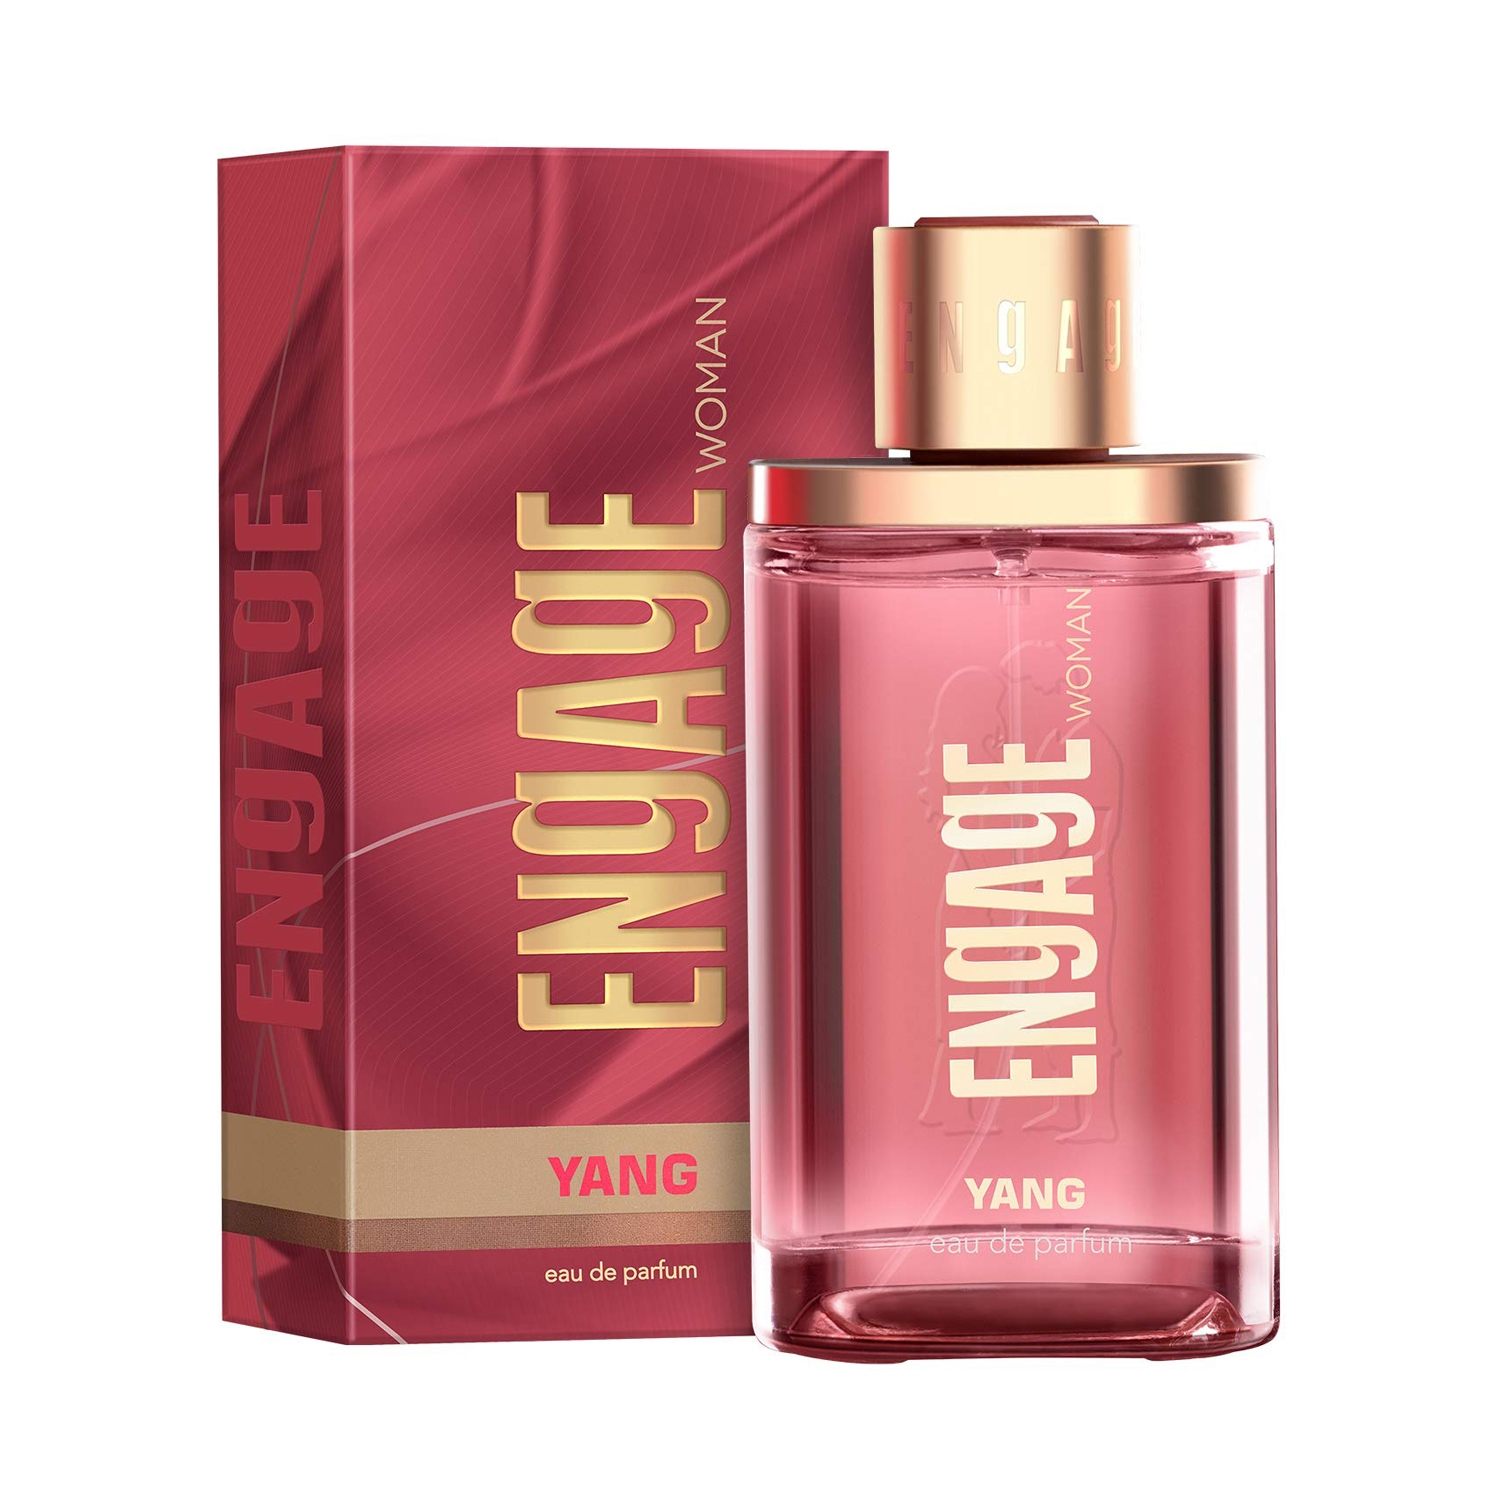 Engage | Engage Yang Eau De Parfum For Women (90ml)